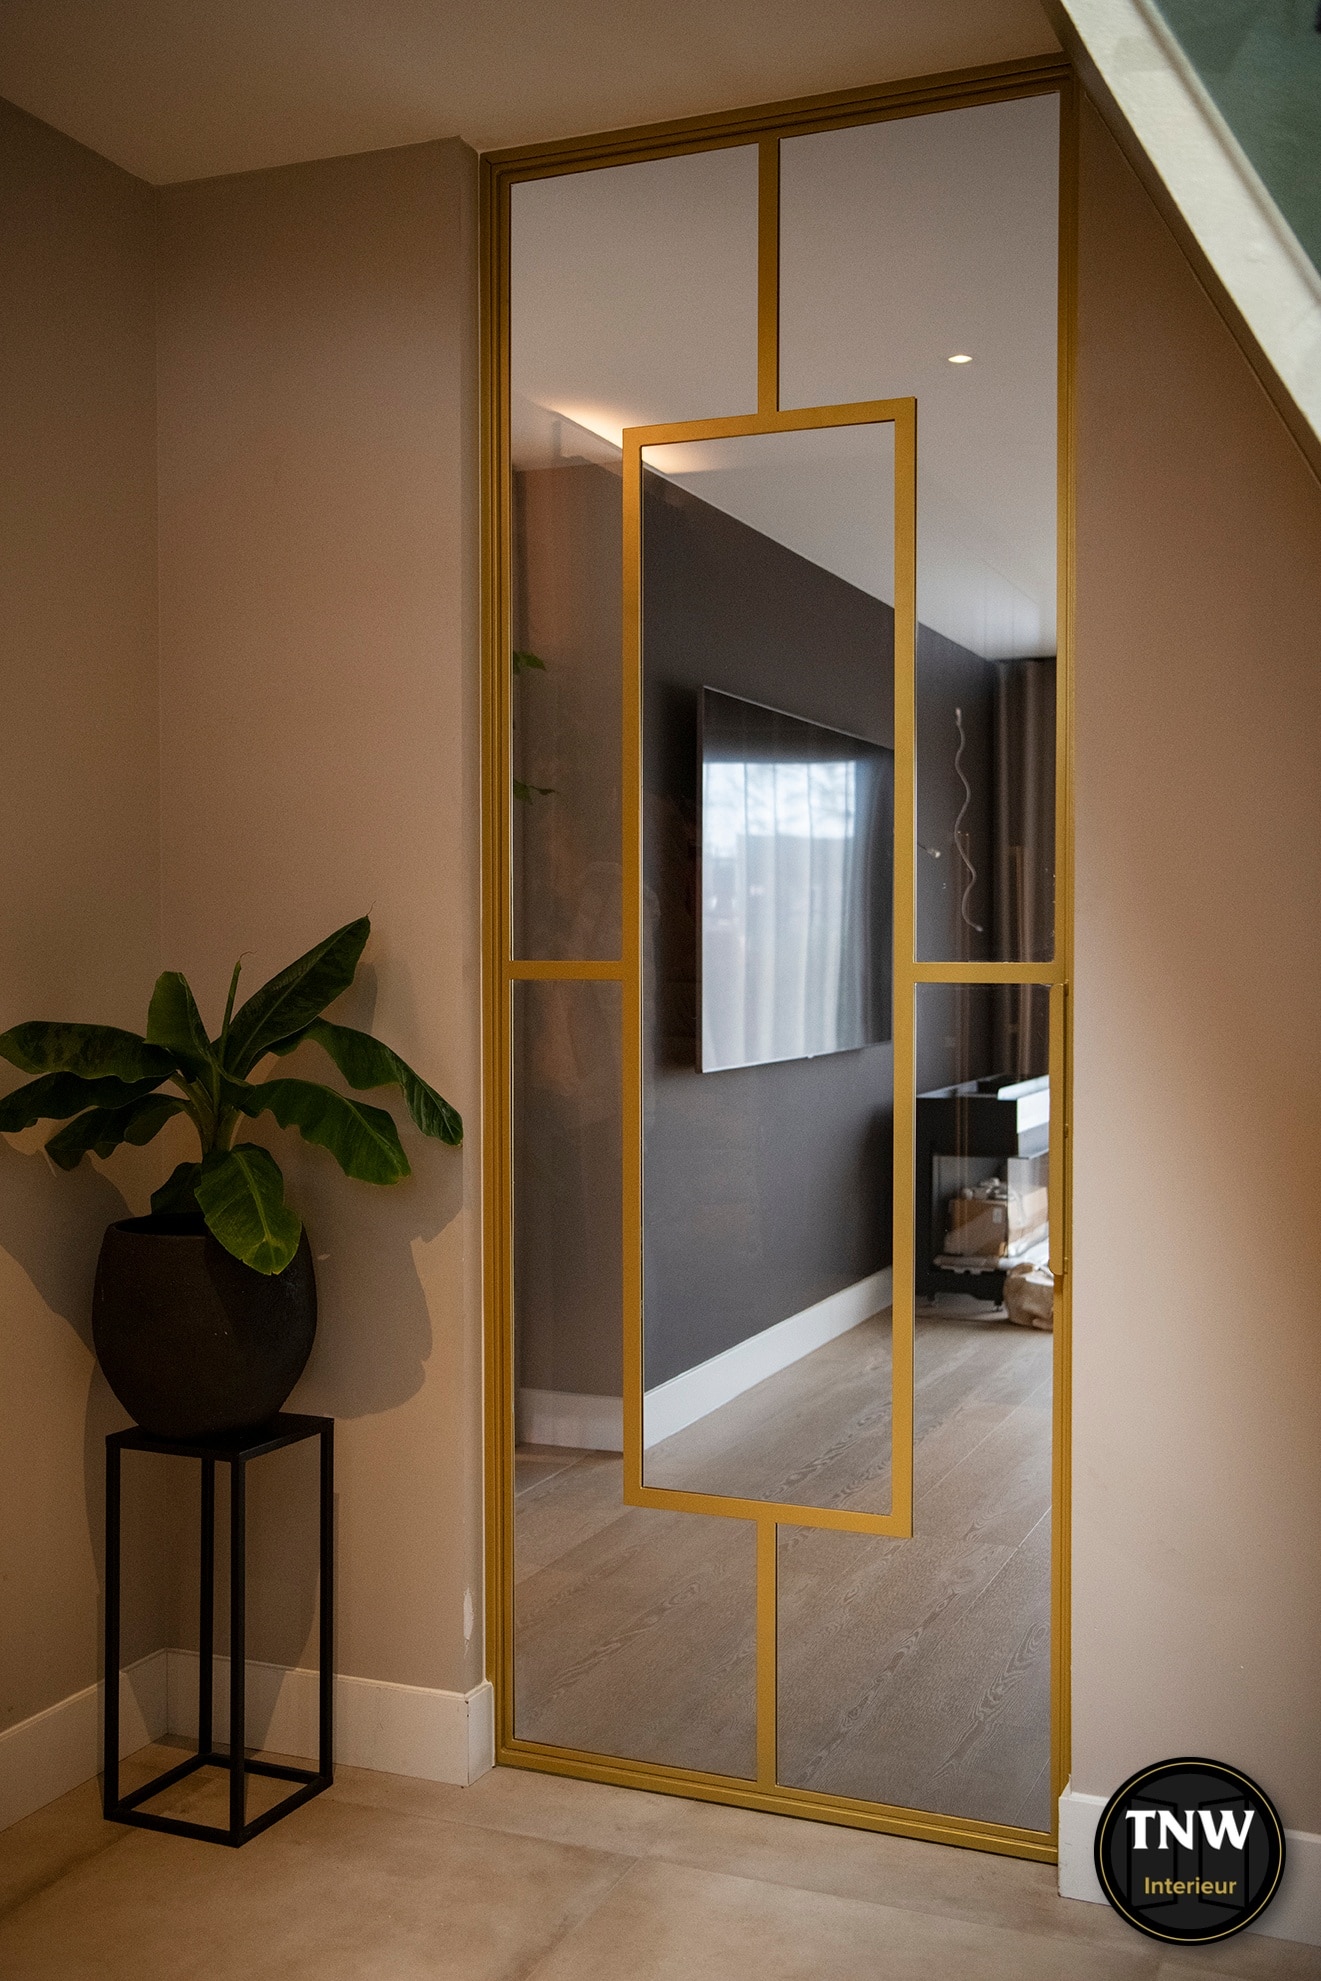 Je bekijkt nu Gouden deur met grijs glas | TNW Interieur